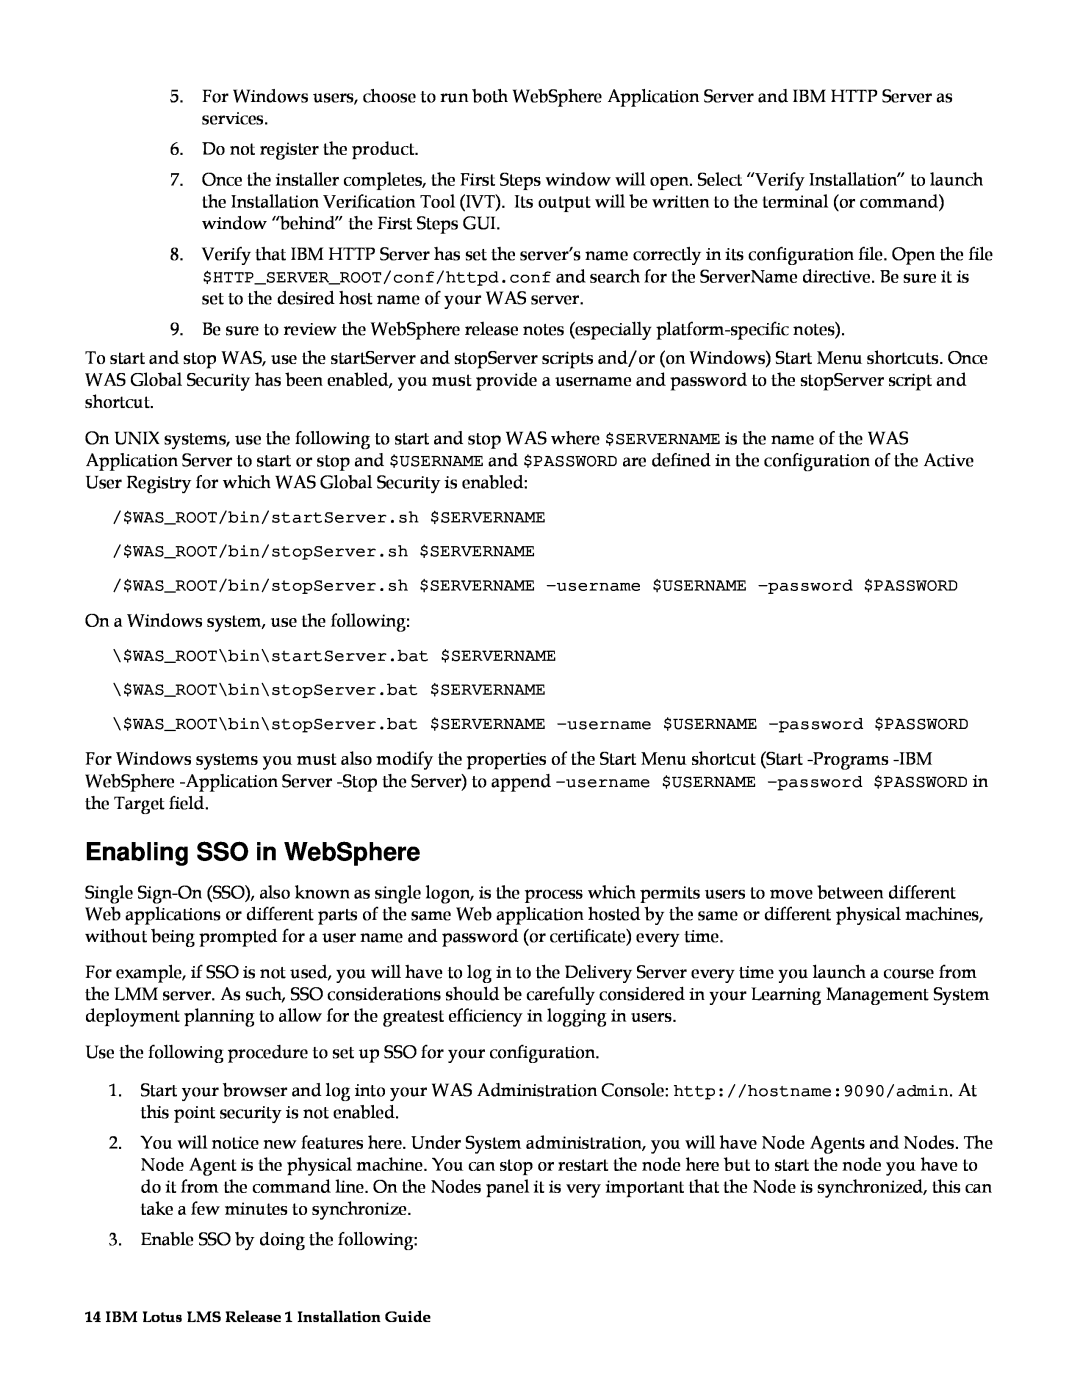 IBM G210-1784-00 manual Enabling SSO in WebSphere 